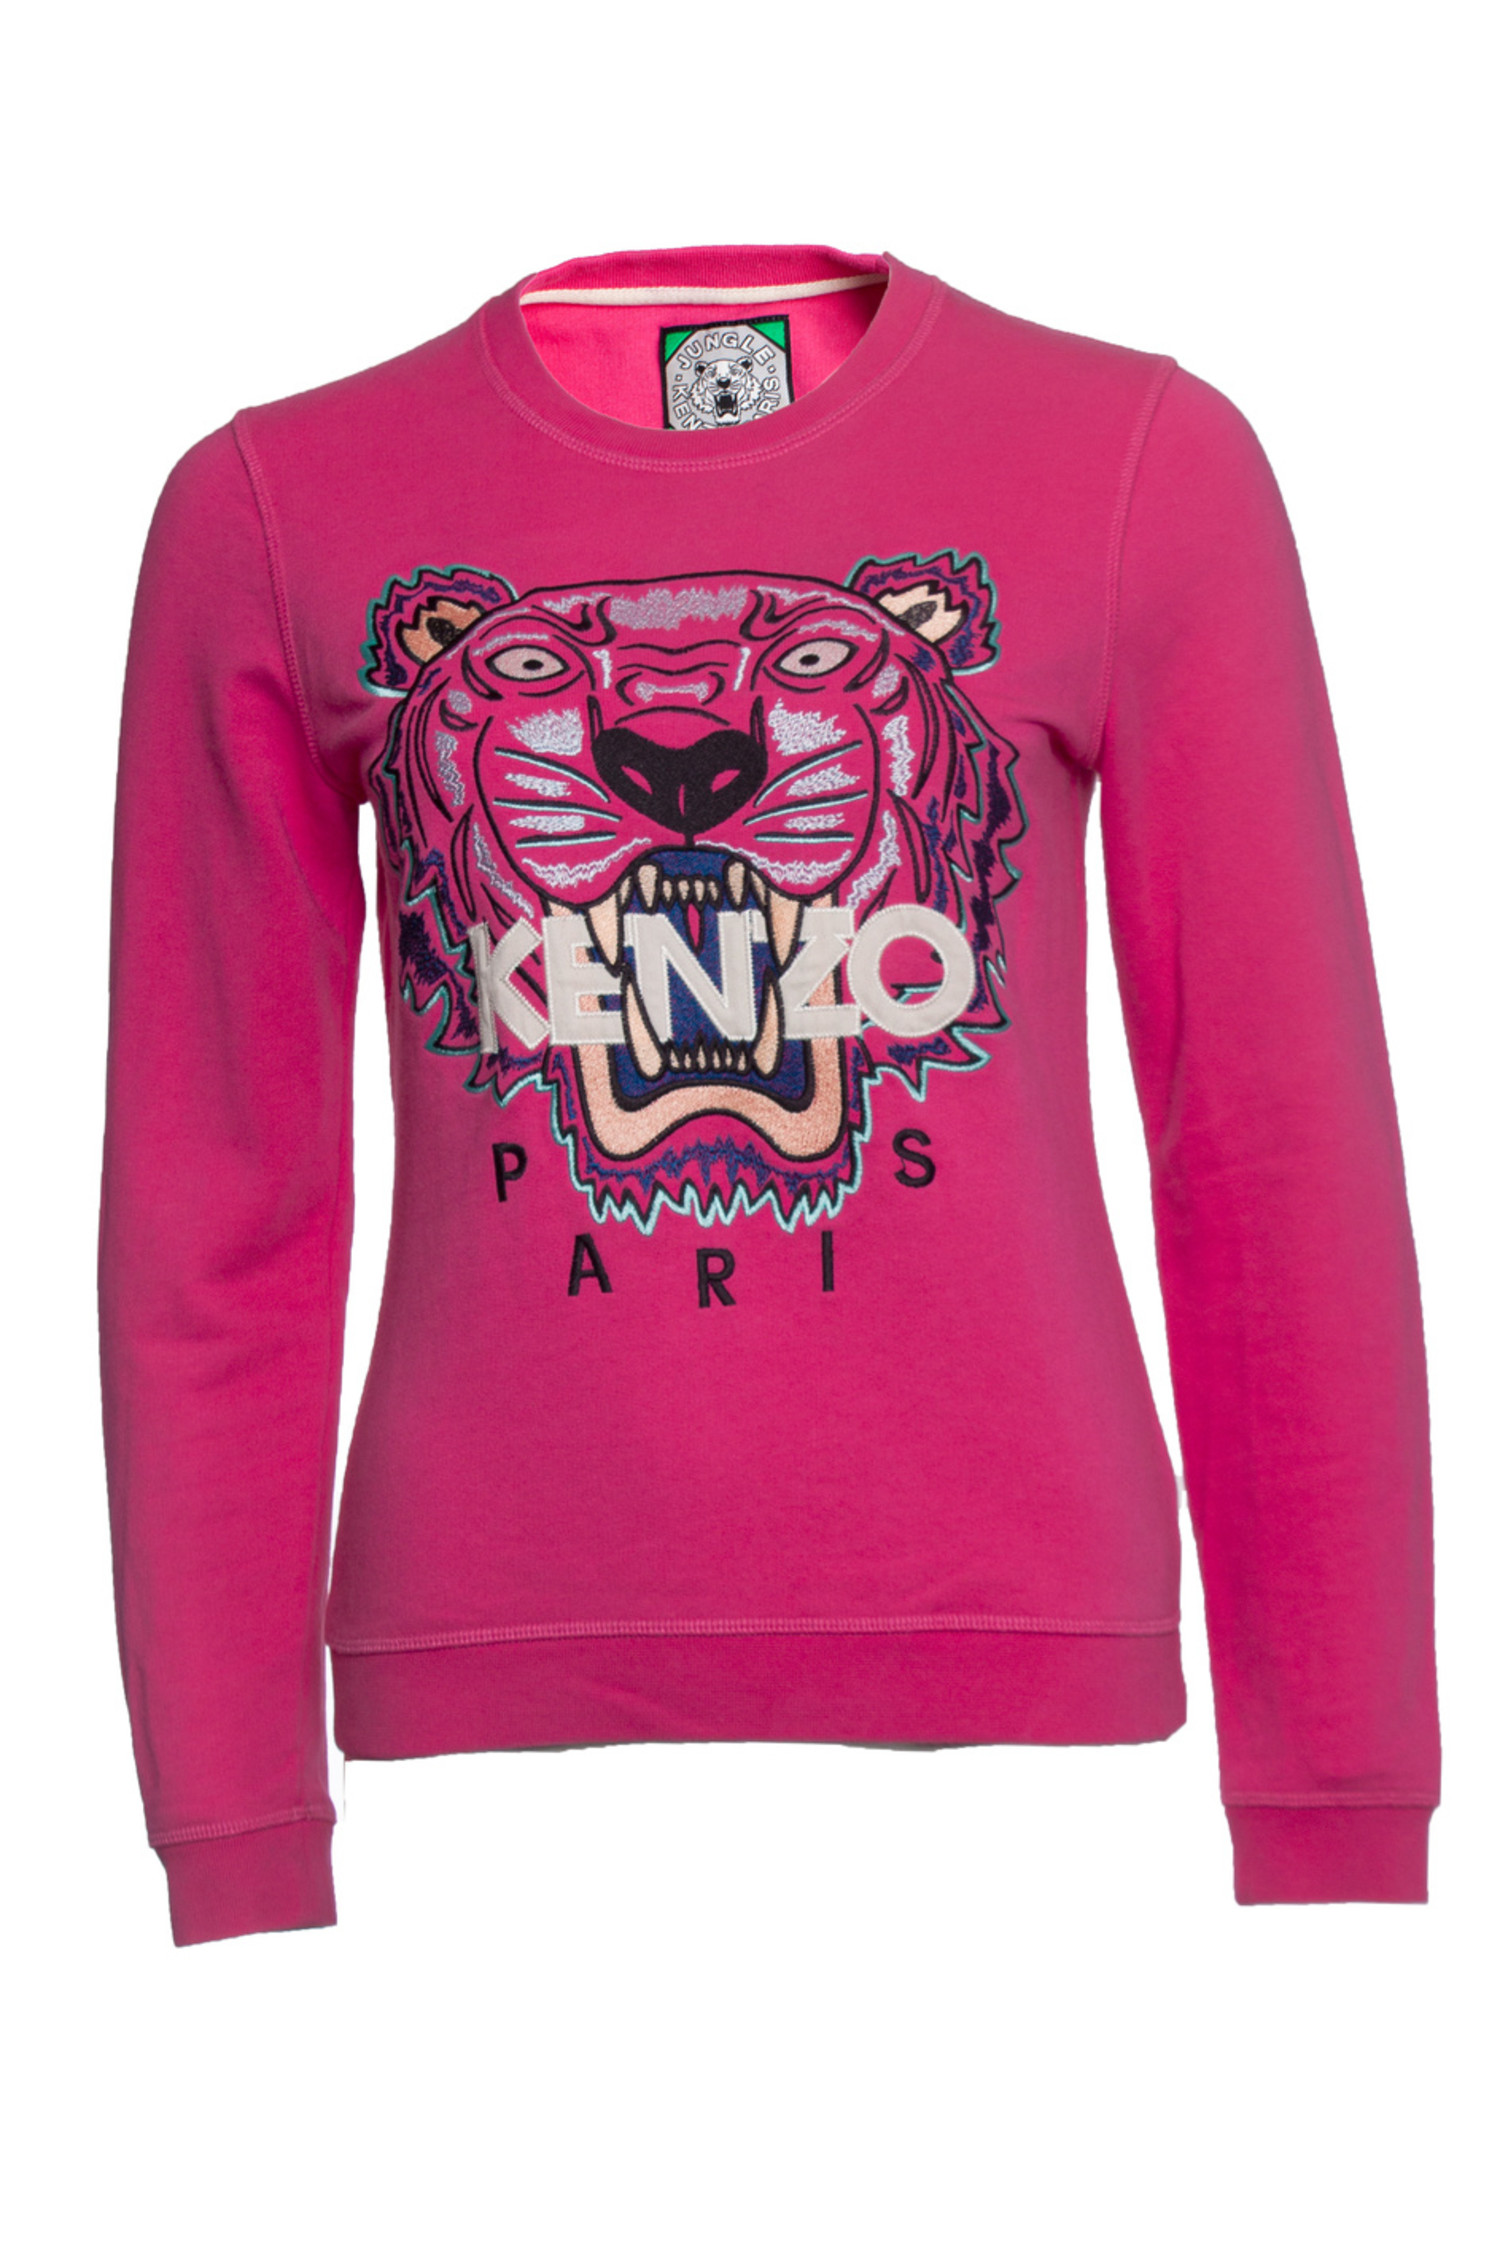 visueel buitenspiegel aankomen Kenzo, roze tijger trui - Unique Designer Pieces